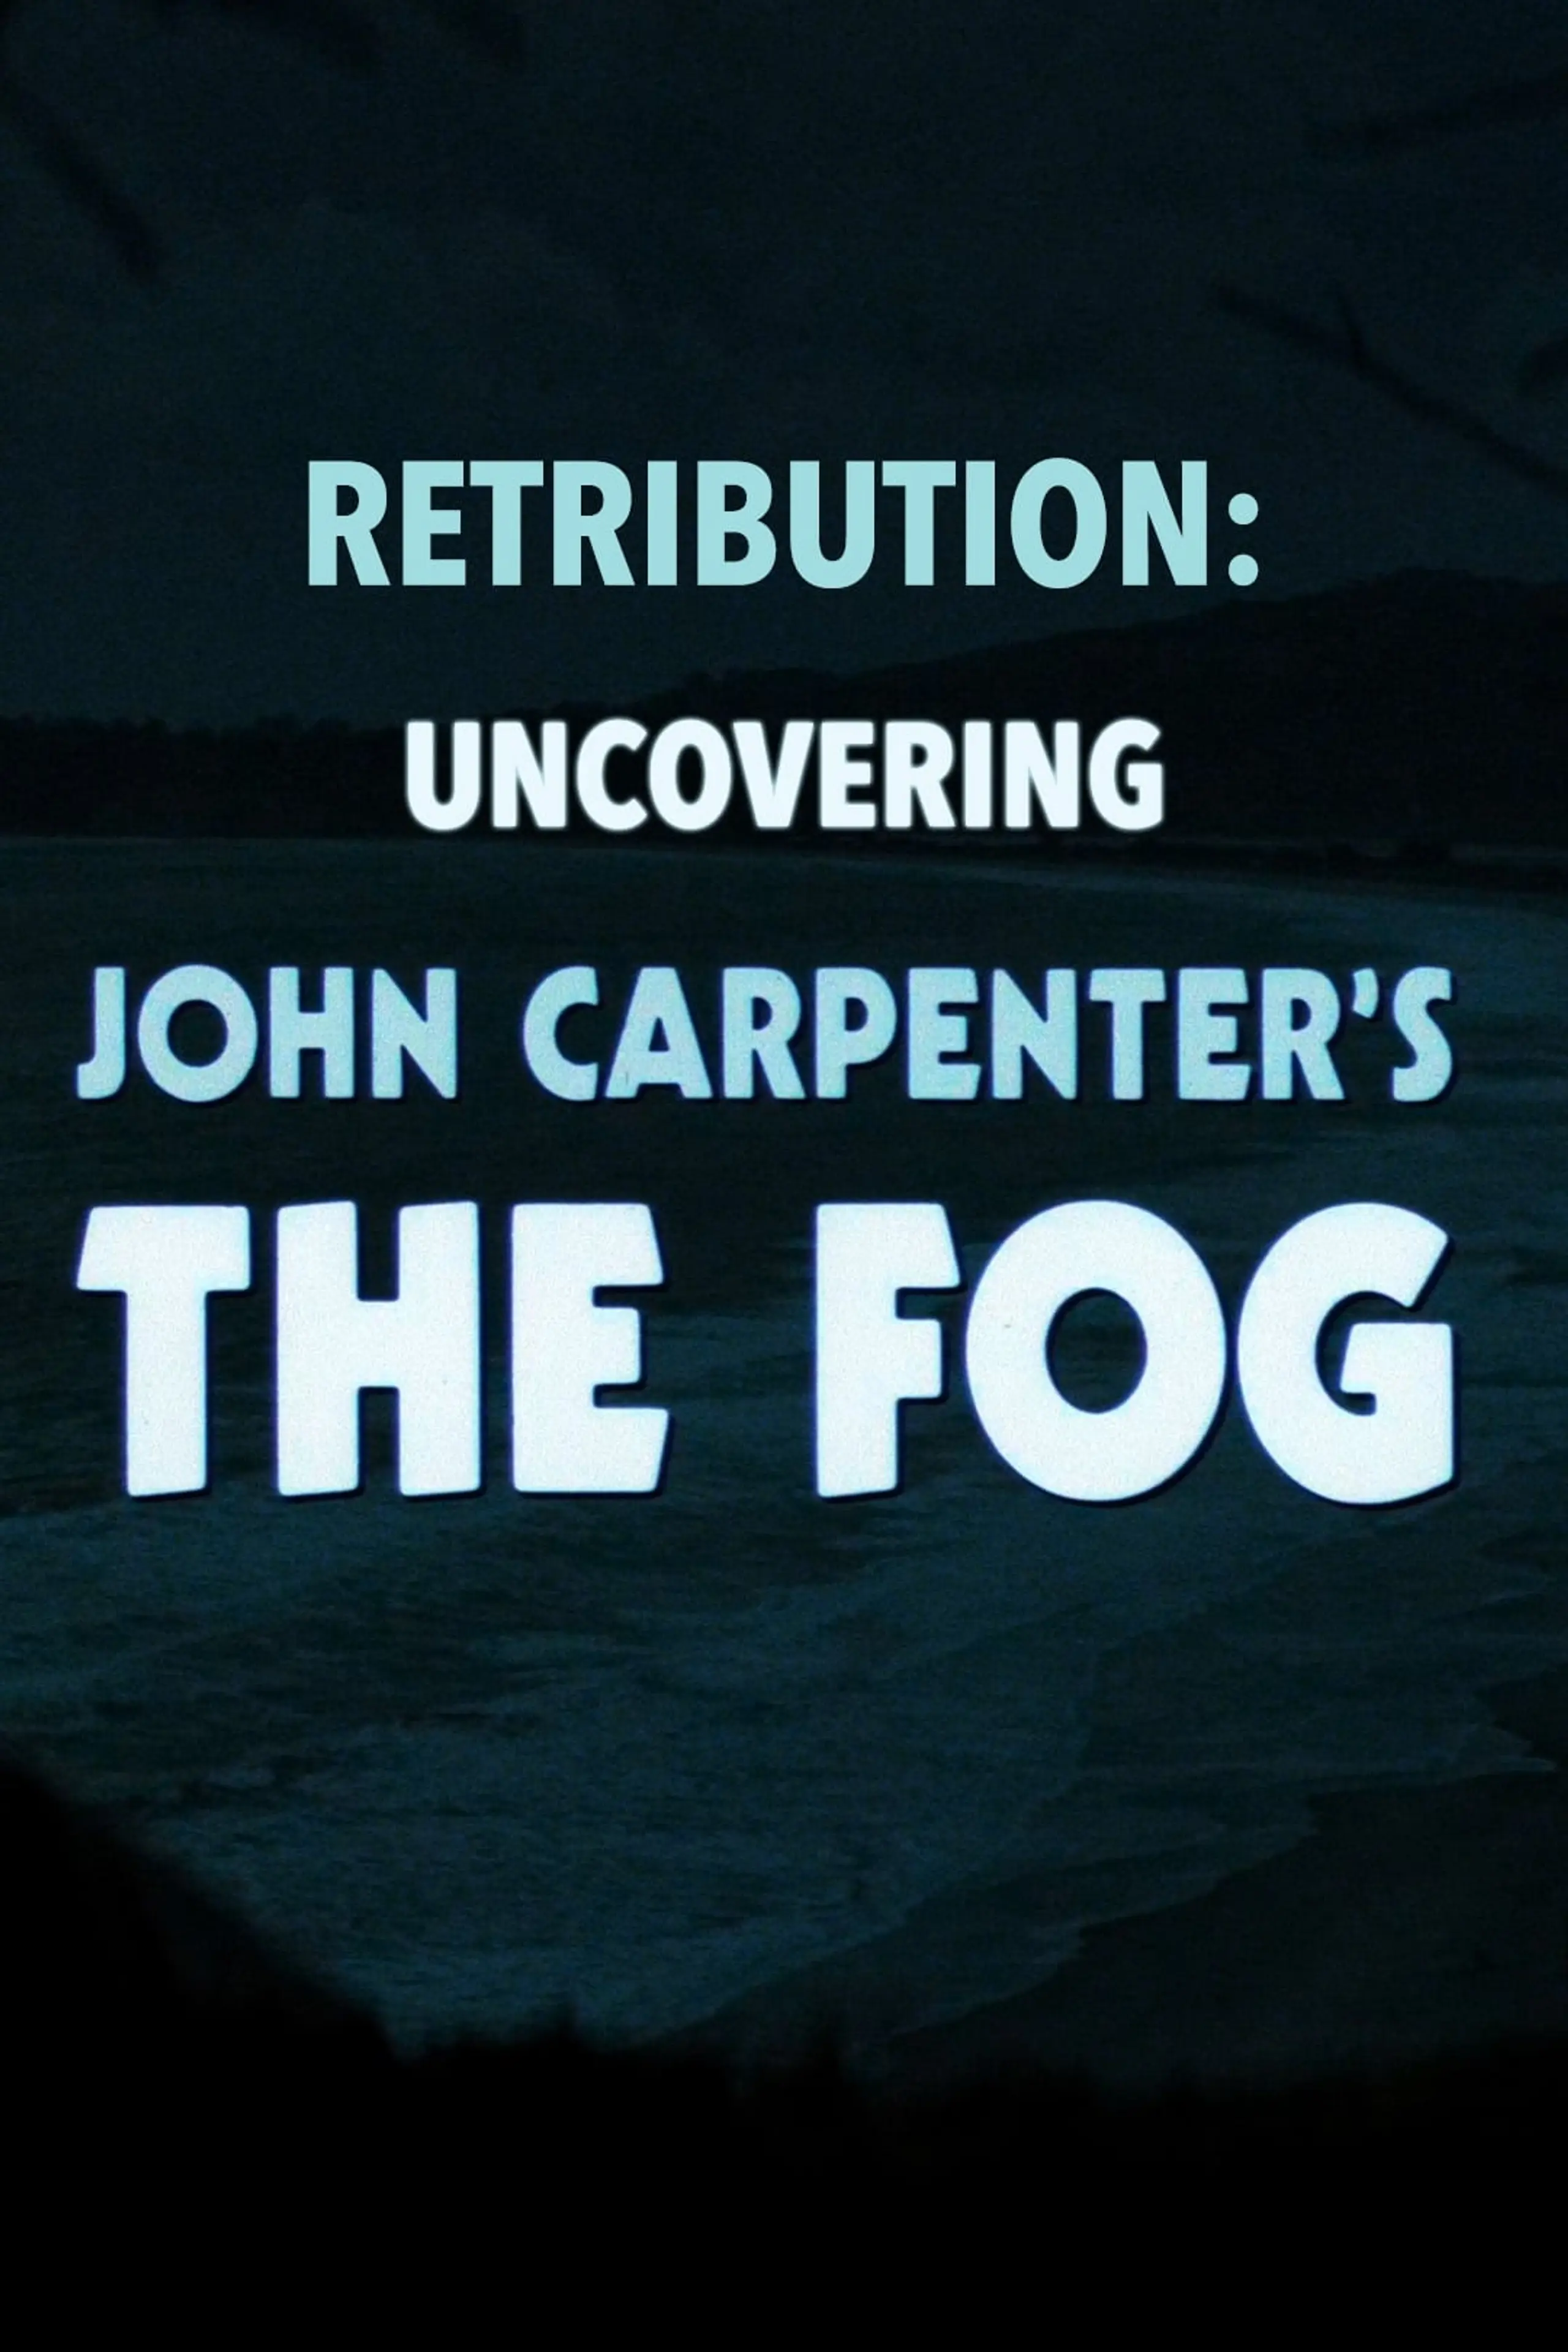 Retribution: Uncovering John Carpenter's The Fog